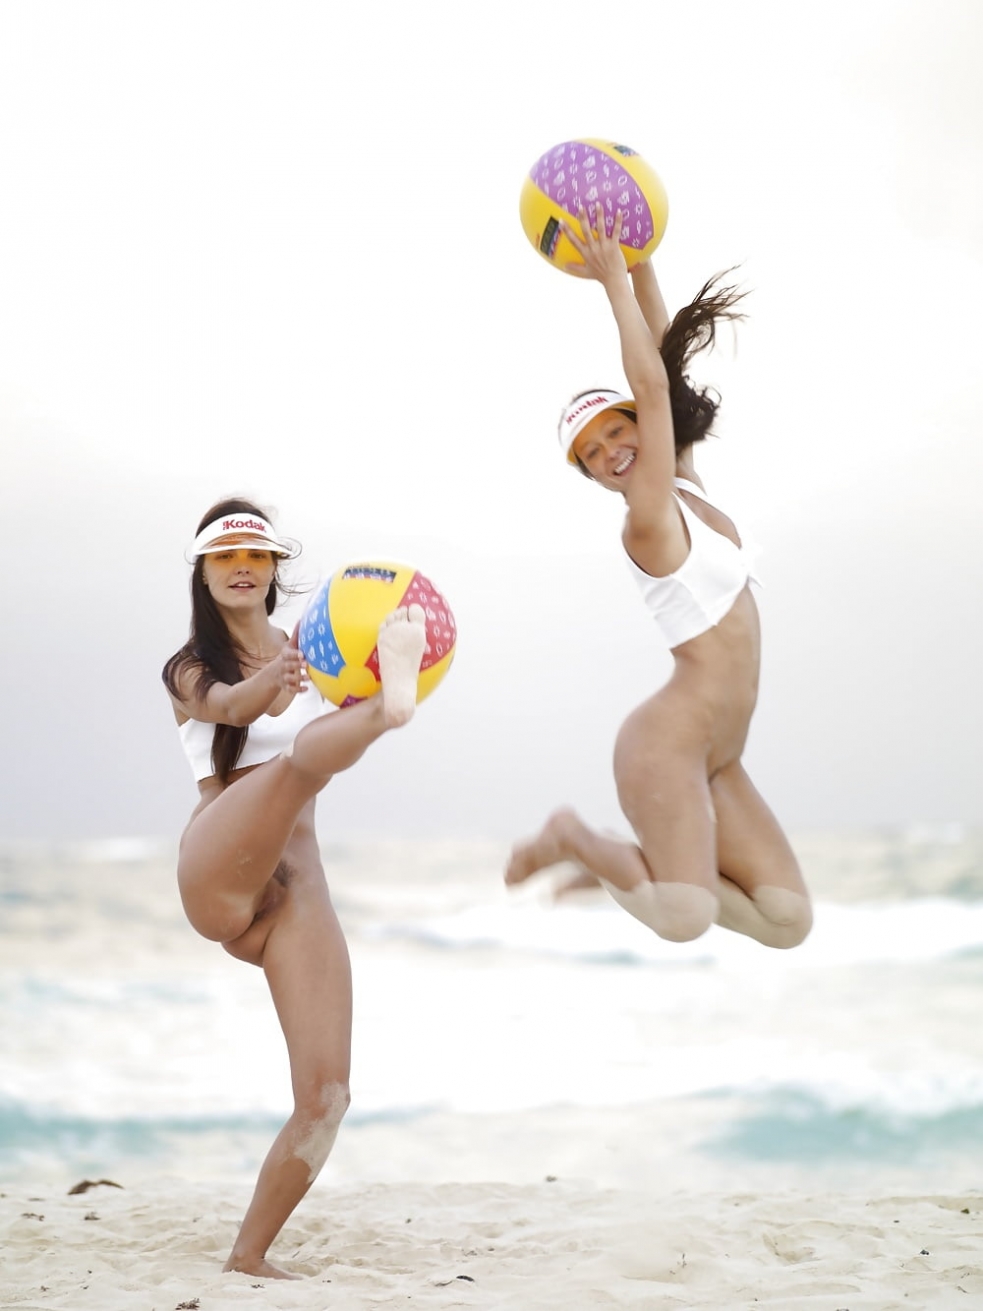 голая девушка и надувной пляжный мяч